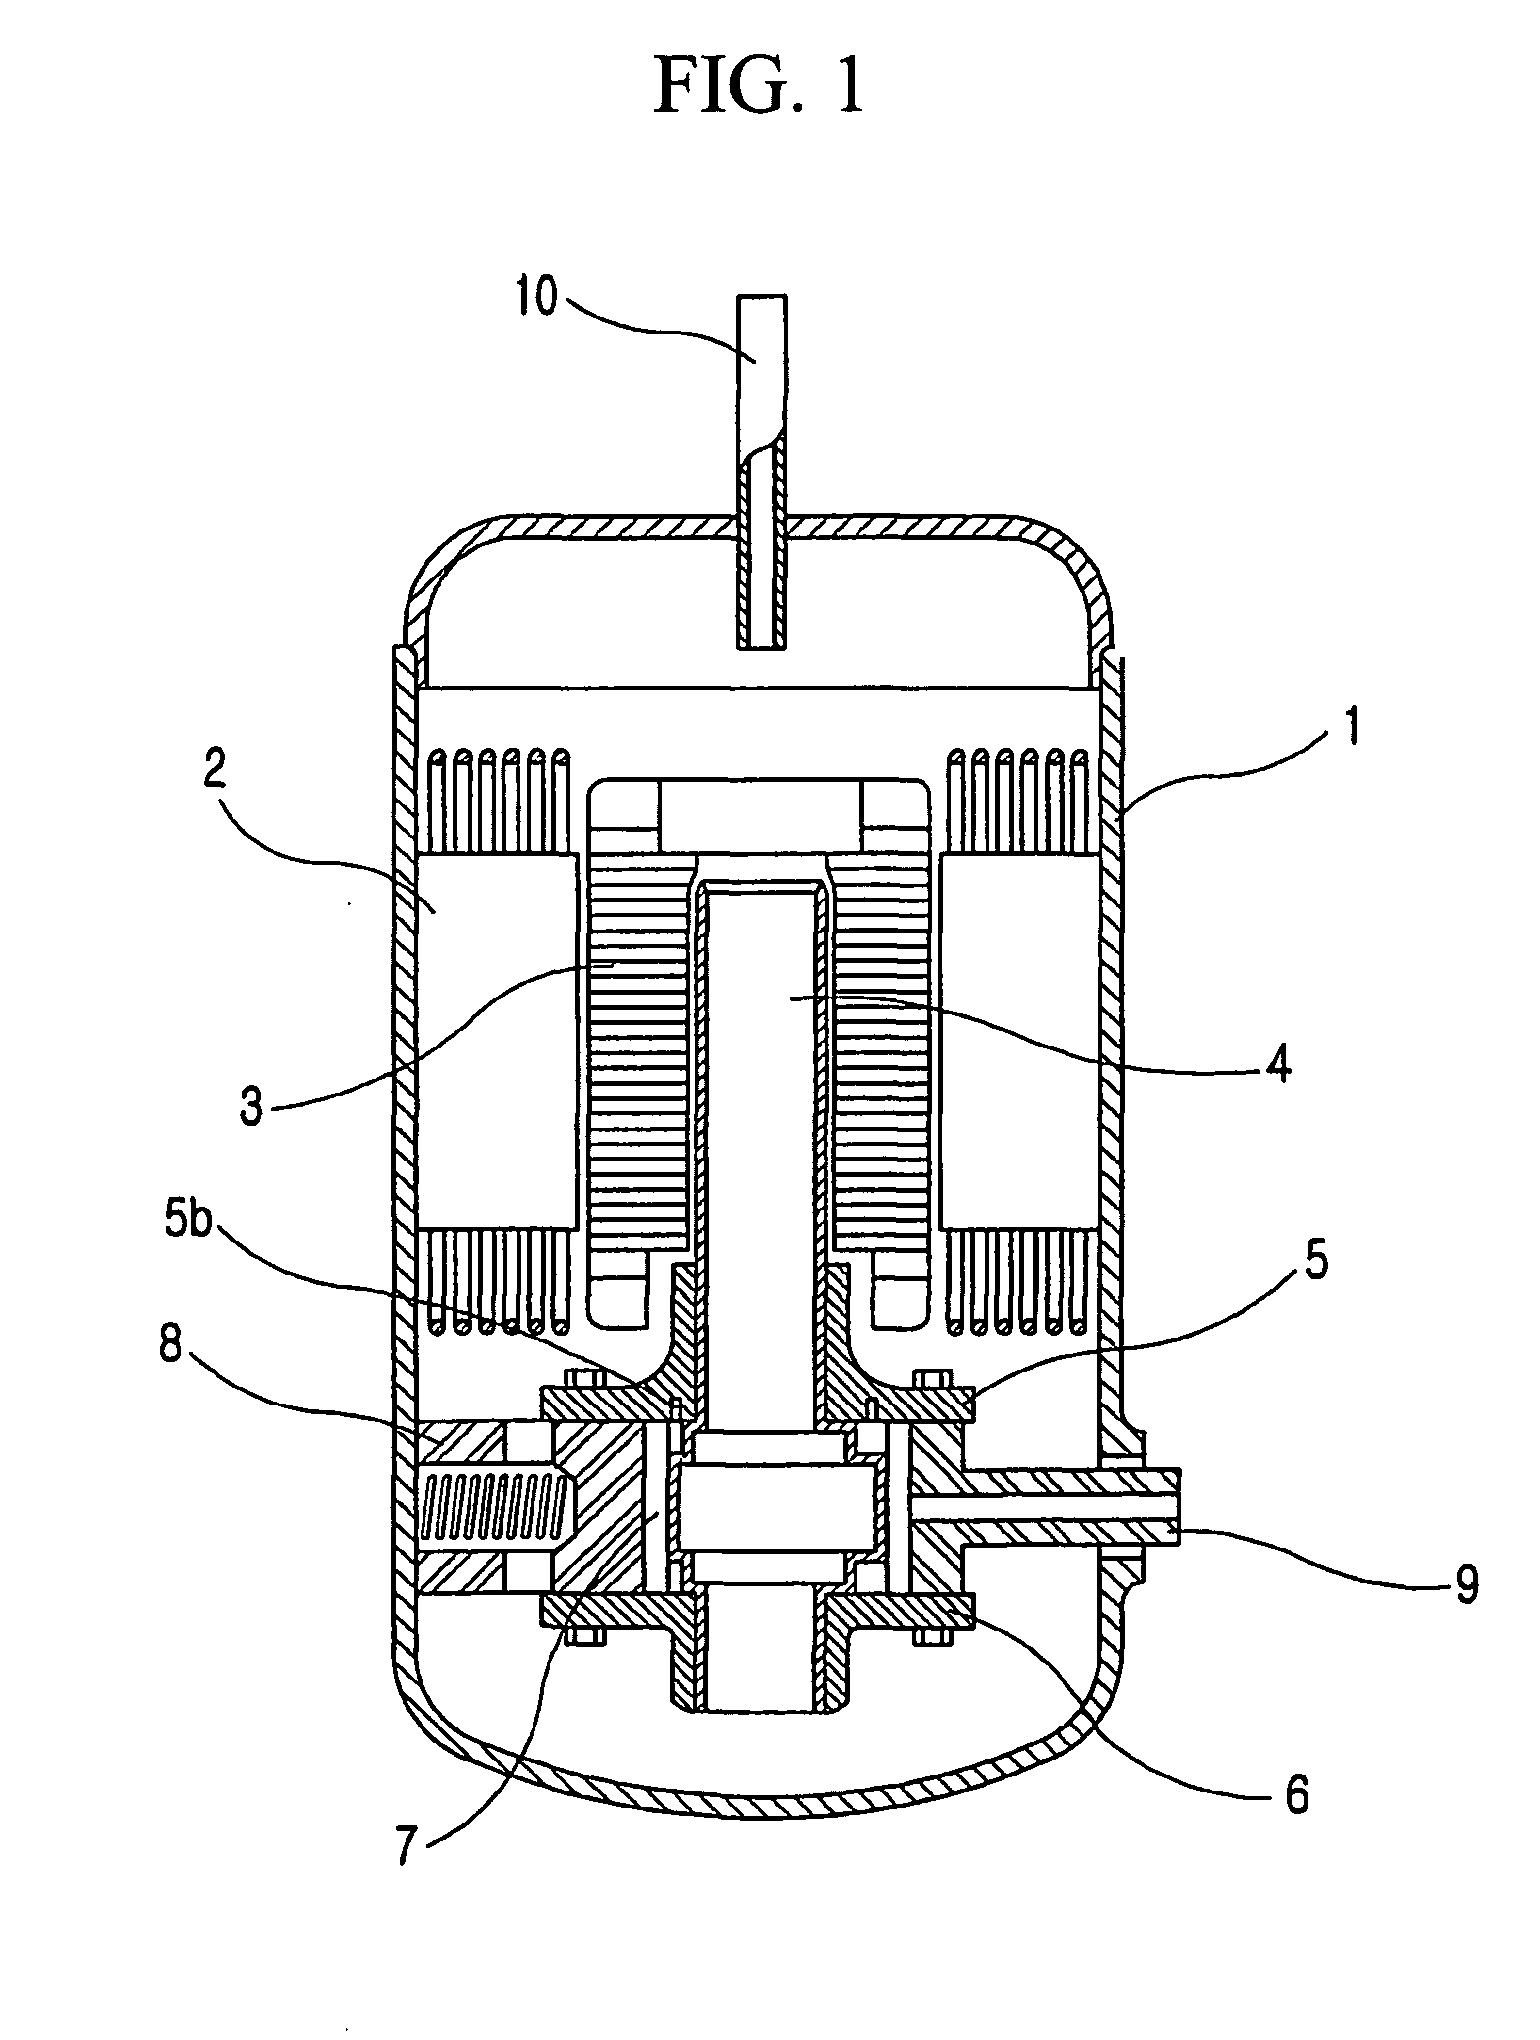 Method for manufacturing flange for compressor